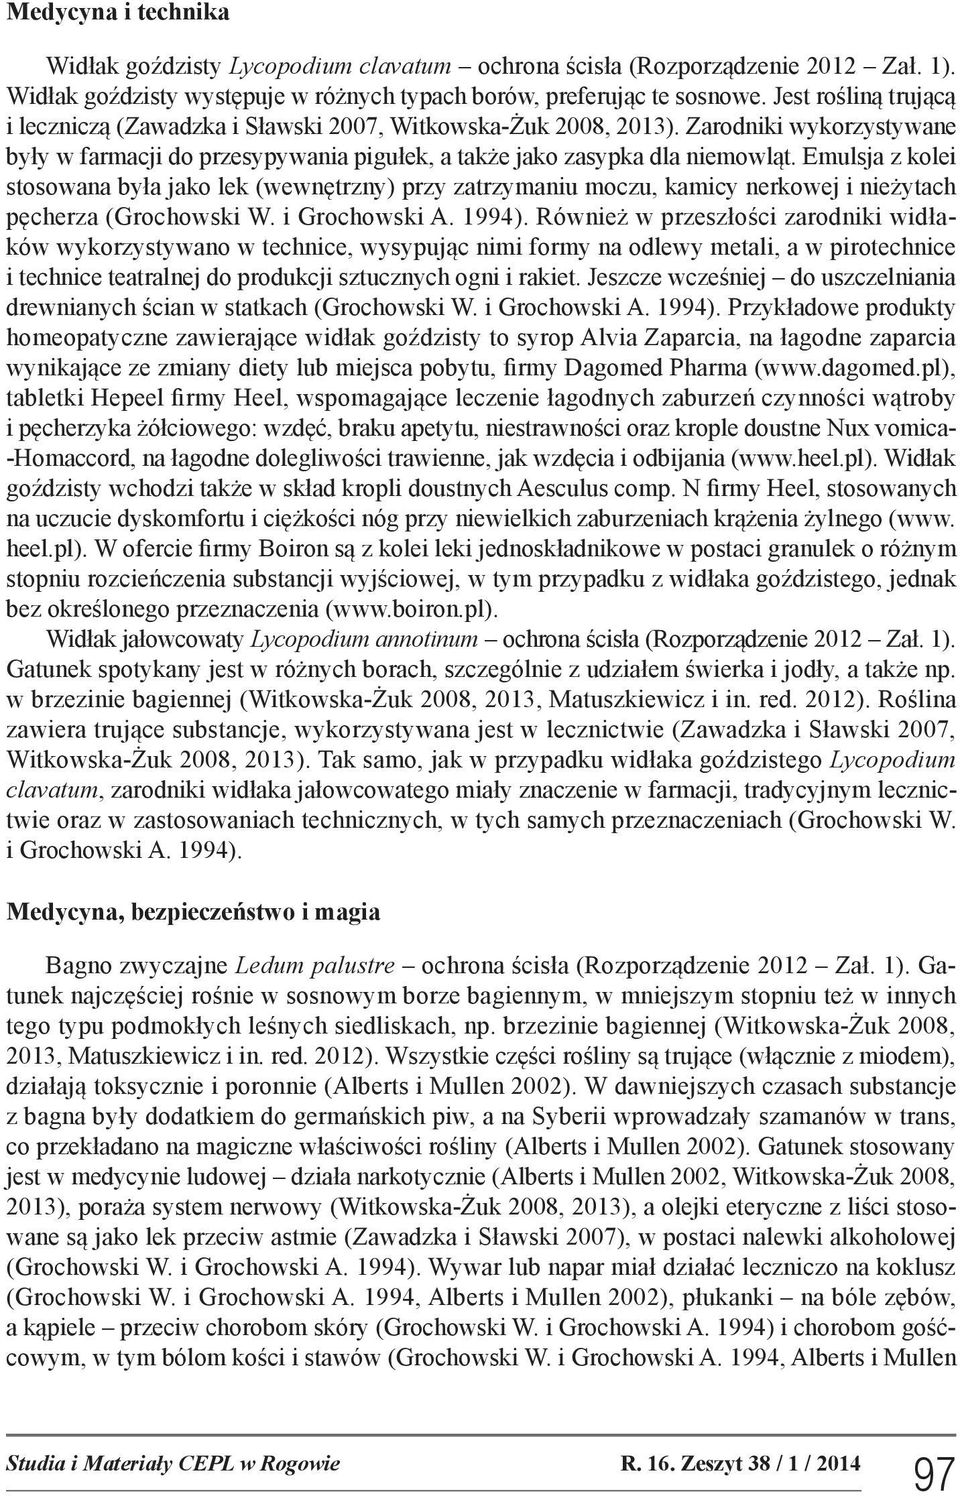 Emulsja z kolei stosowana była jako lek (wewnętrzny) przy zatrzymaniu moczu, kamicy nerkowej i nieżytach pęcherza (Grochowski W. i Grochowski A. 1994).